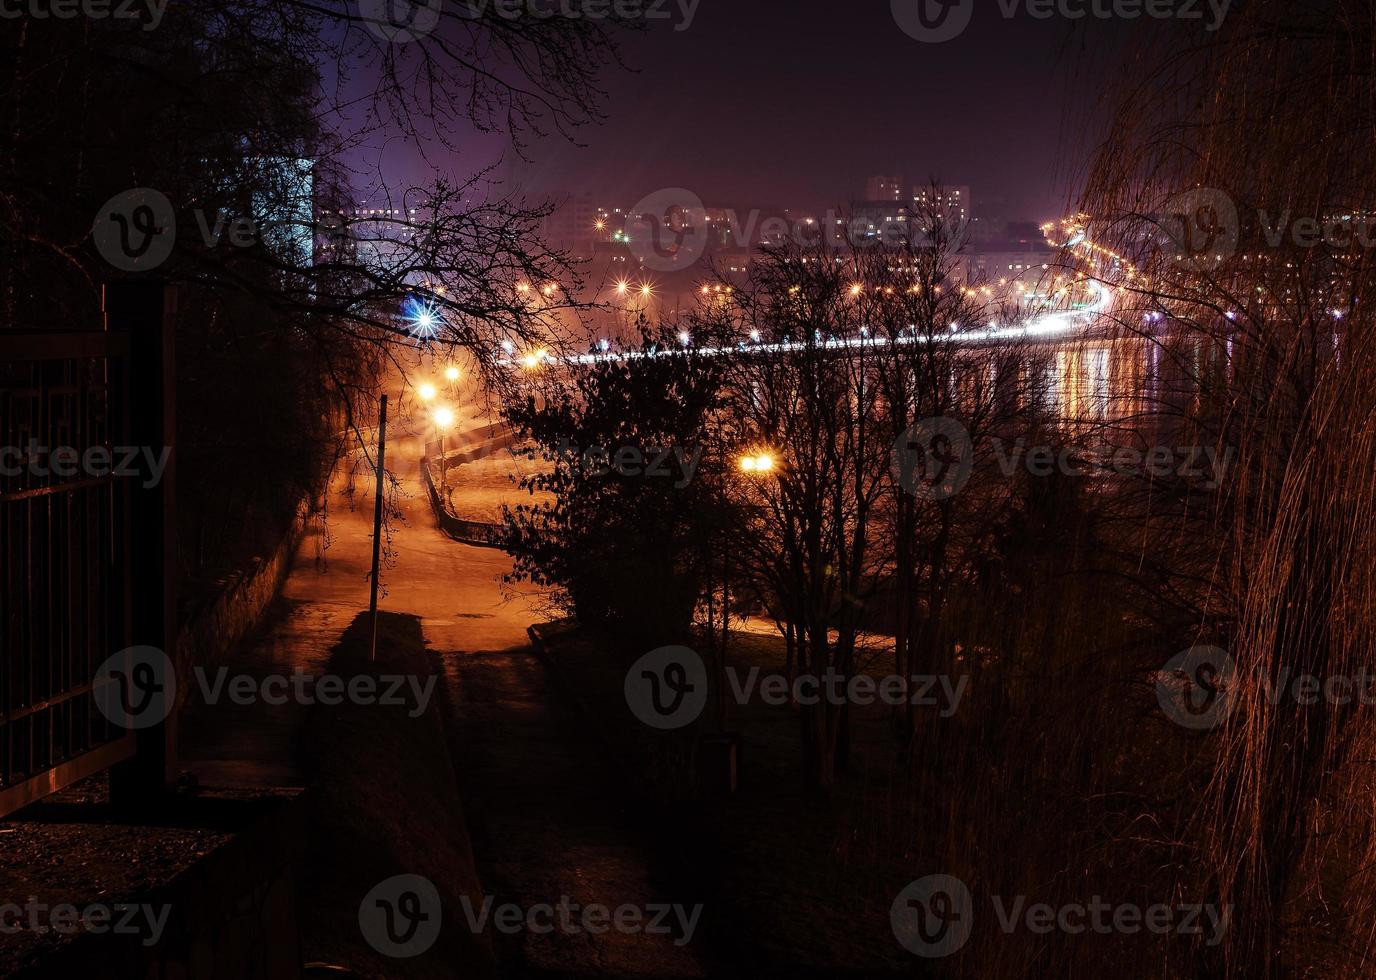 Panorama der nächtlichen Lichter der Stadt und Reflexionen auf dem See bei Ternopil, Ukraine, Europa. foto